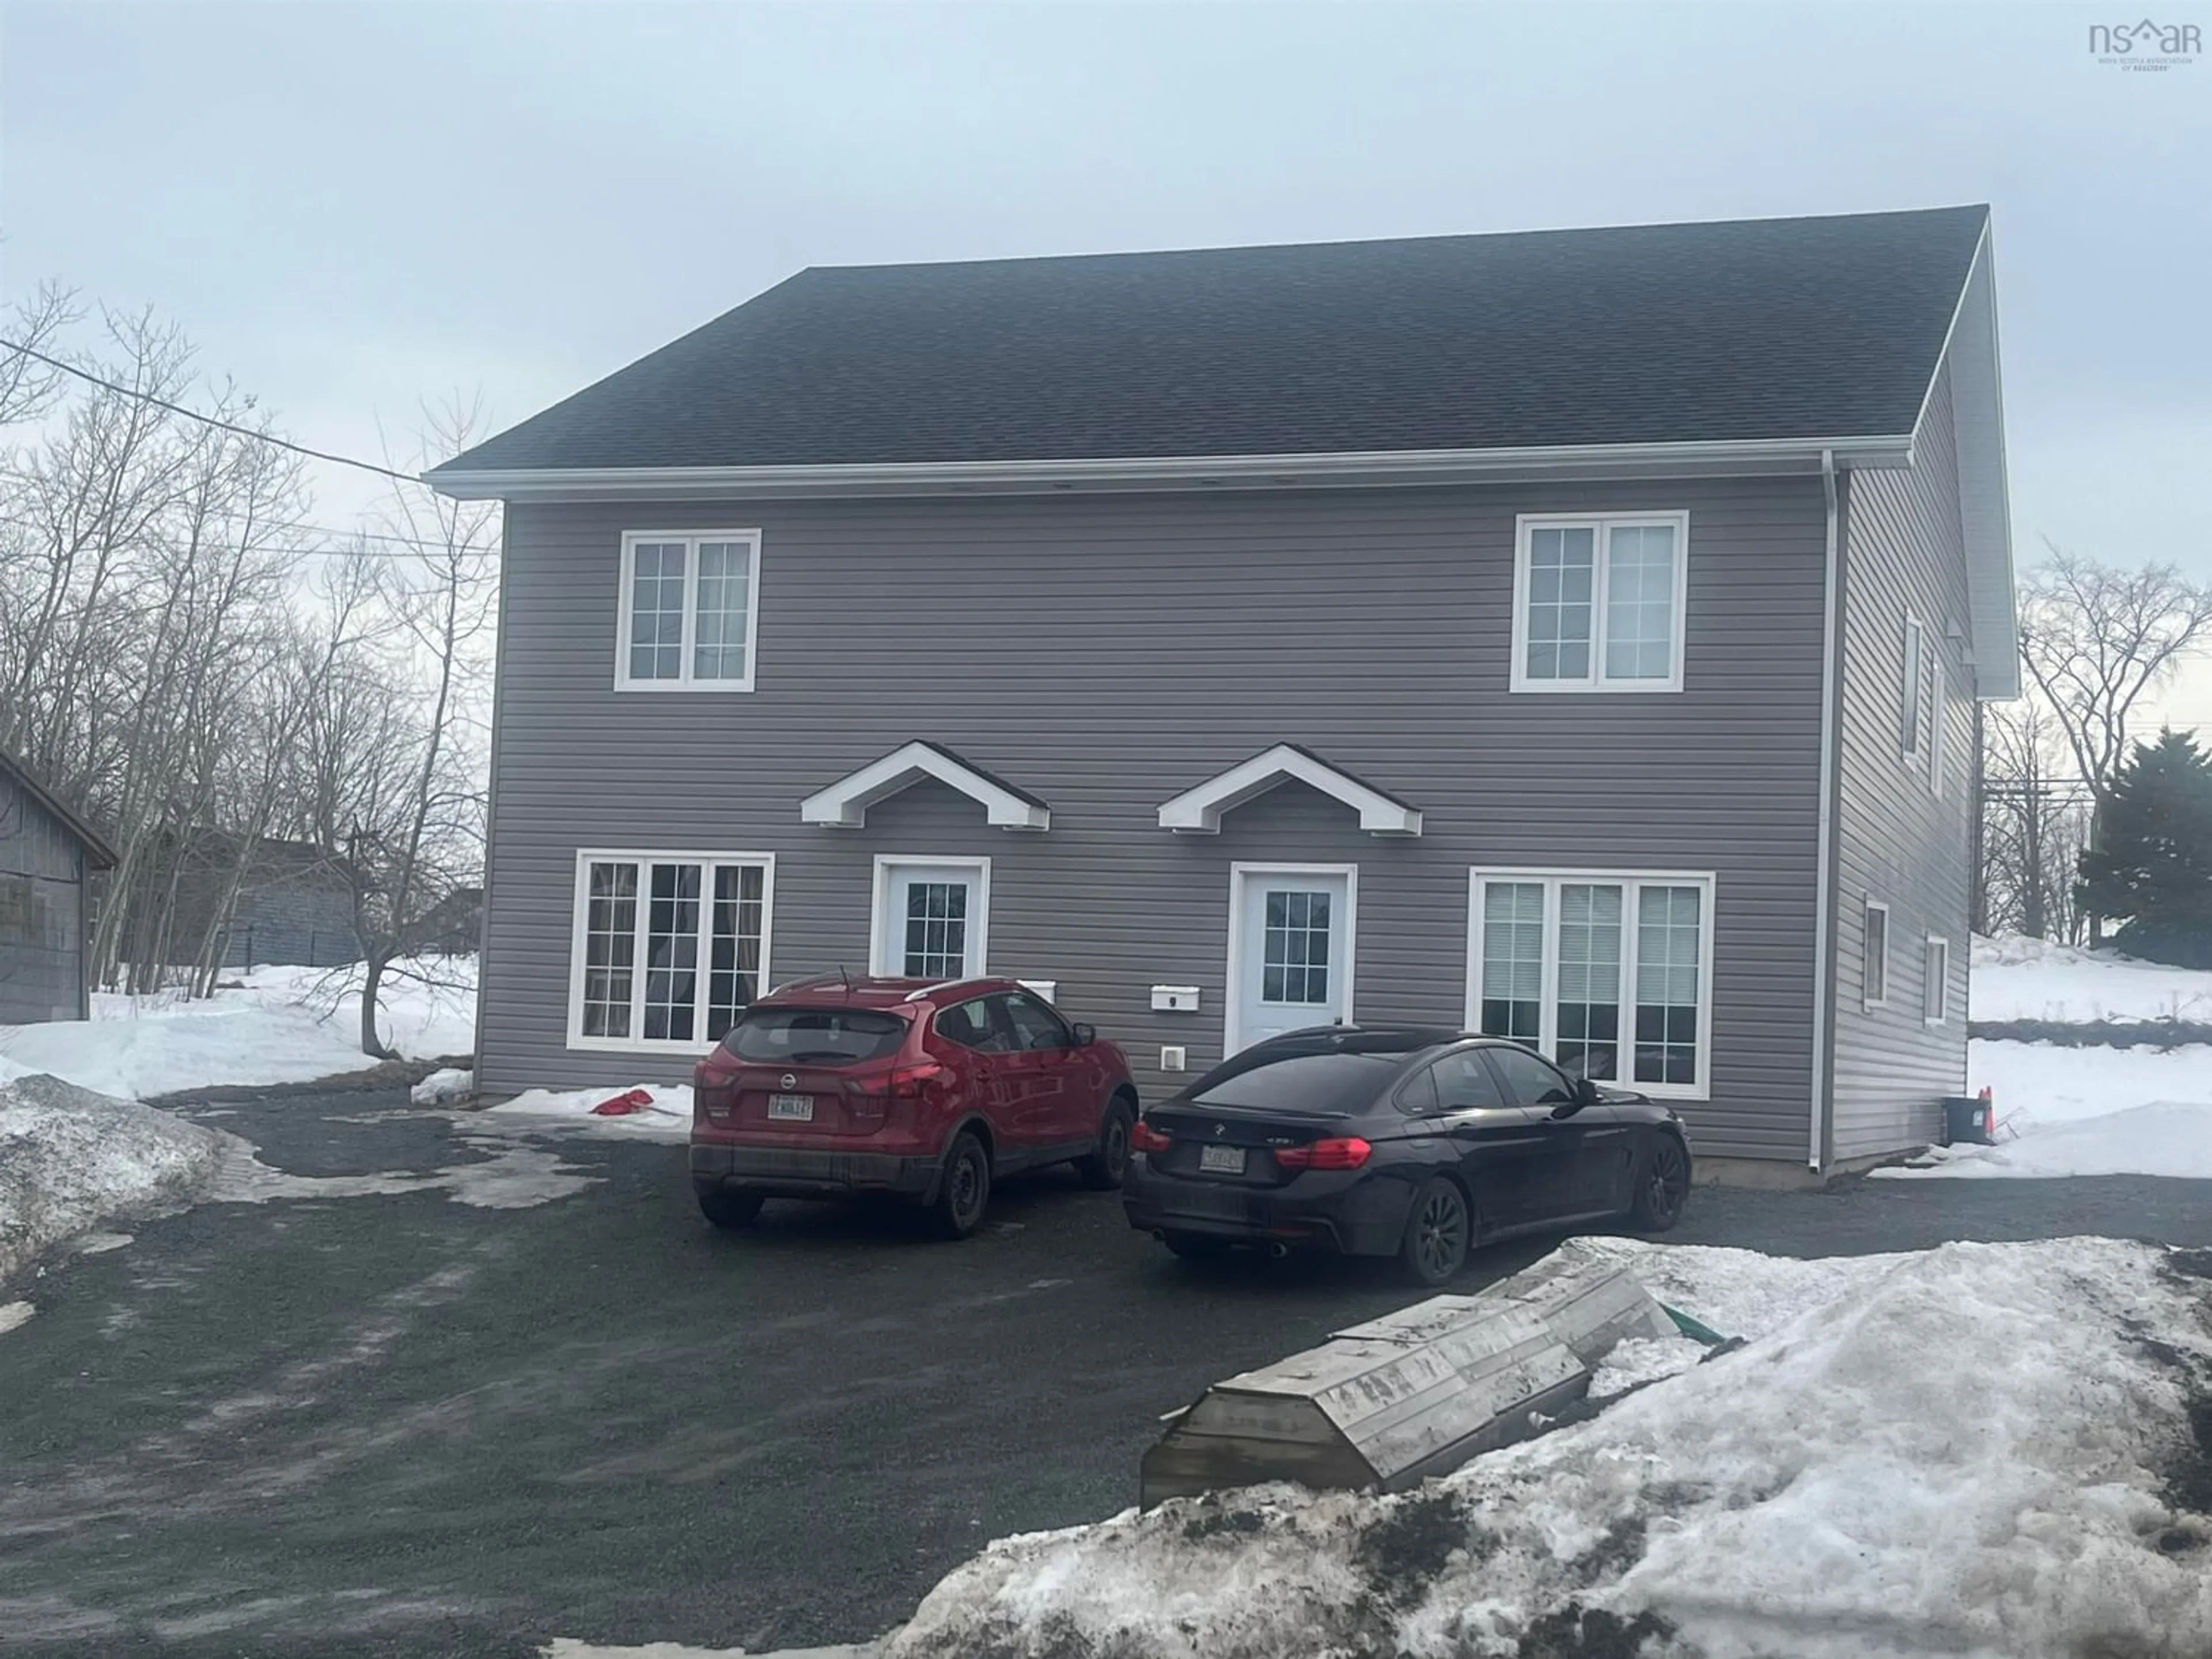 Home with unknown exterior material for 7/9 Alex Terr, Antigonish Nova Scotia B2G 0A6